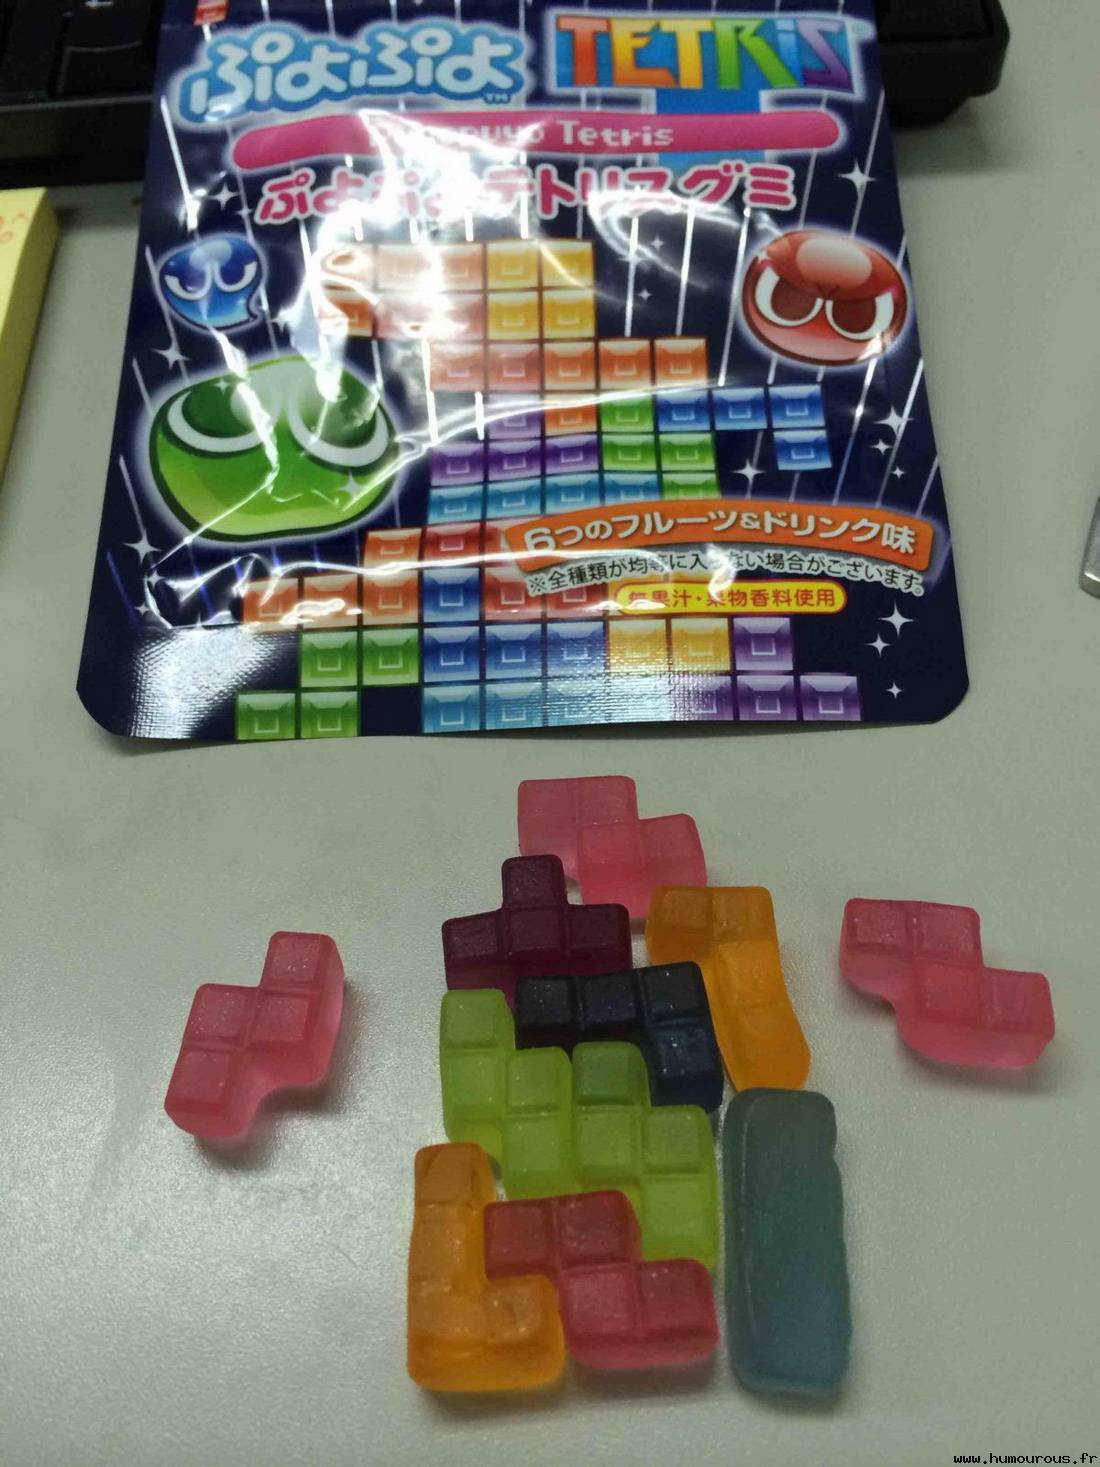 Bonbons tetris